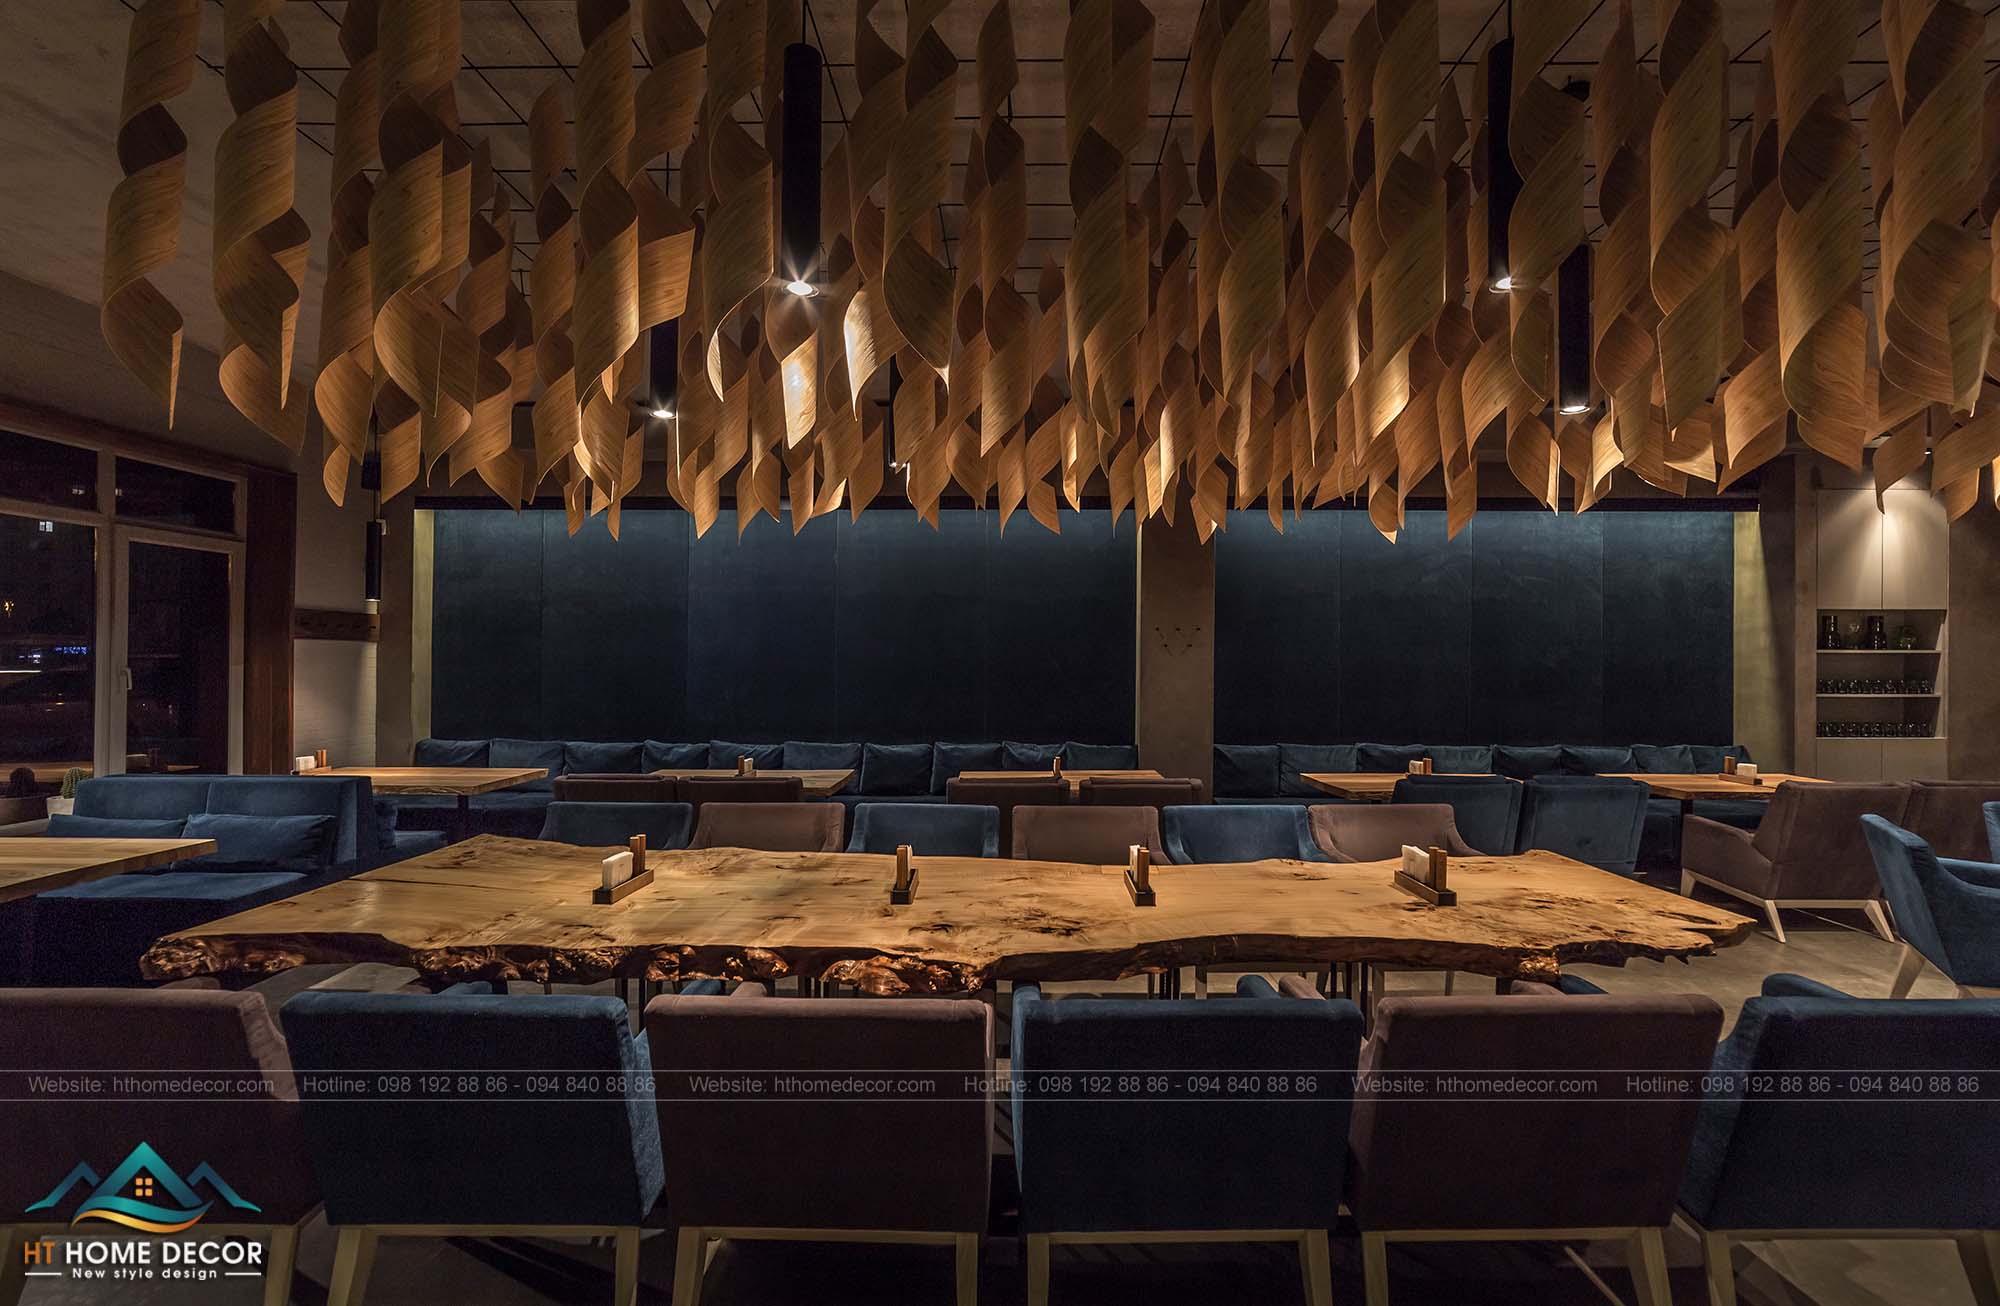 Một chiếc bàn dài bằng gỗ độc đáo phù hợp cho những bữa tiệc nhỏ của công ty hay bạn bè. Muốn thưởng thức trong không gian sang trọng của nhà hàng phong cách Italy.